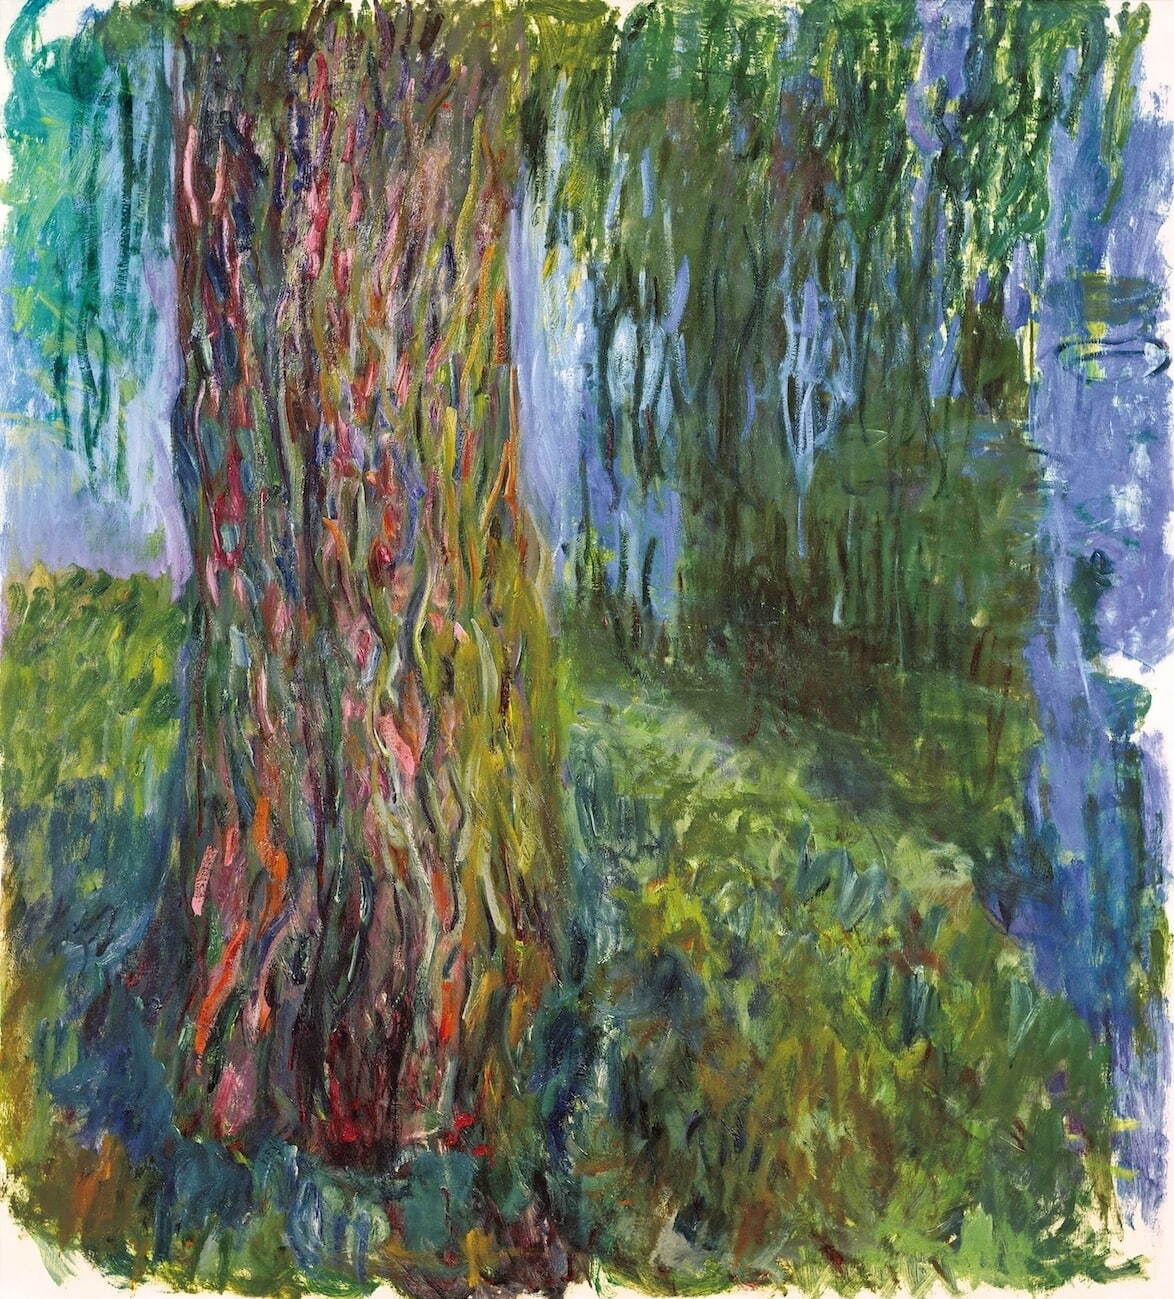 クロード・モネ 《枝垂れ柳と睡蓮の池》 1916-19年頃
油彩／カンヴァス マルモッタン・モネ美術館、パリ
© musée Marmottan Monet